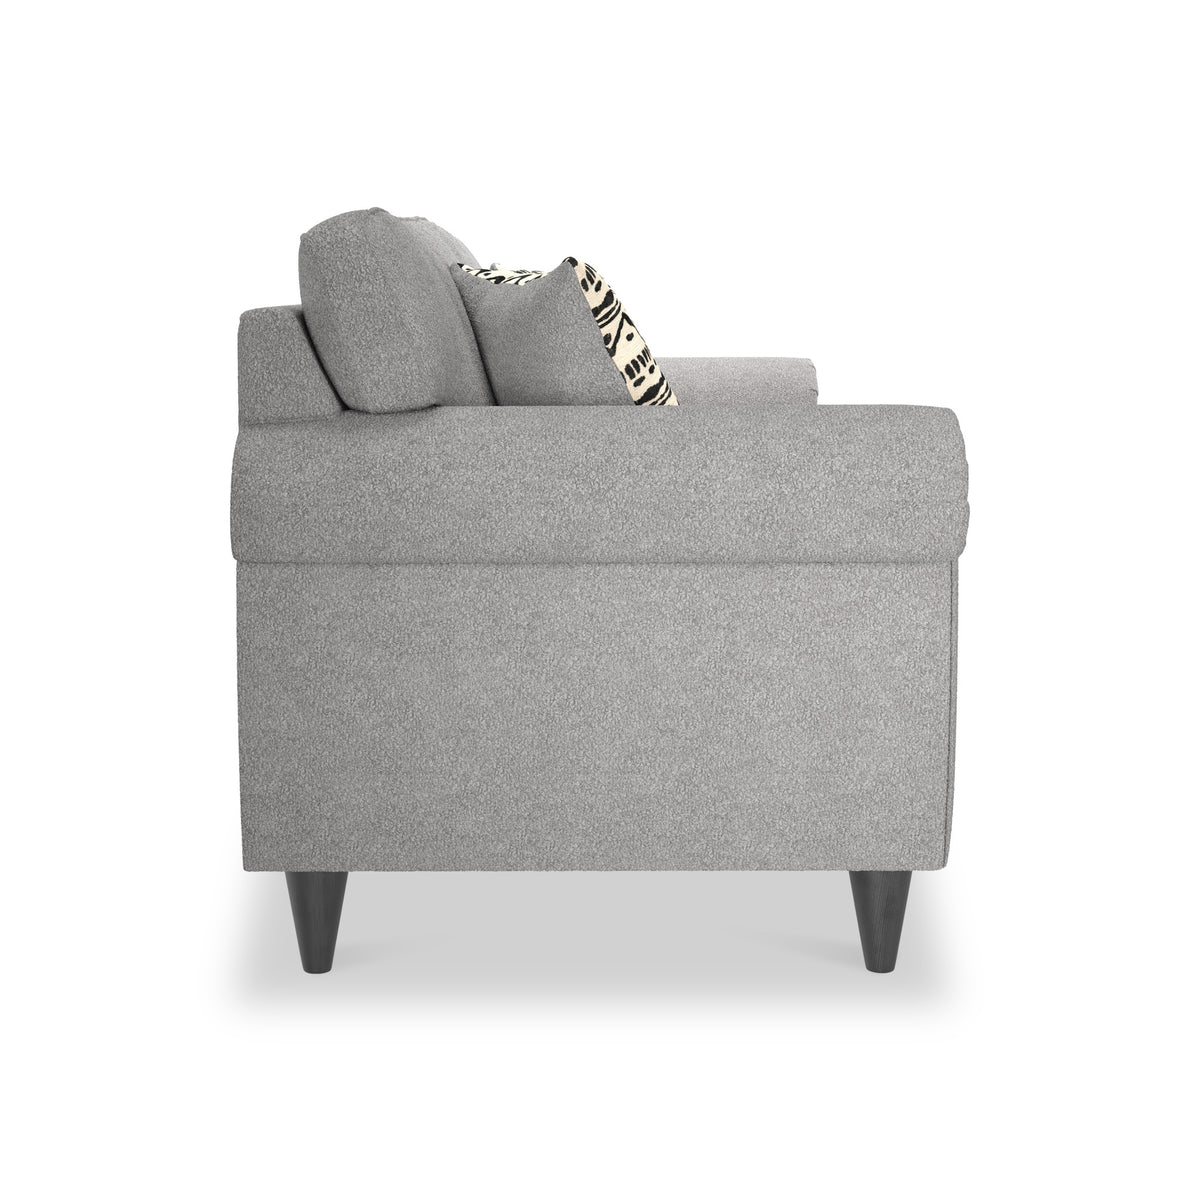 Jessie Grey 3 Seater Sofa